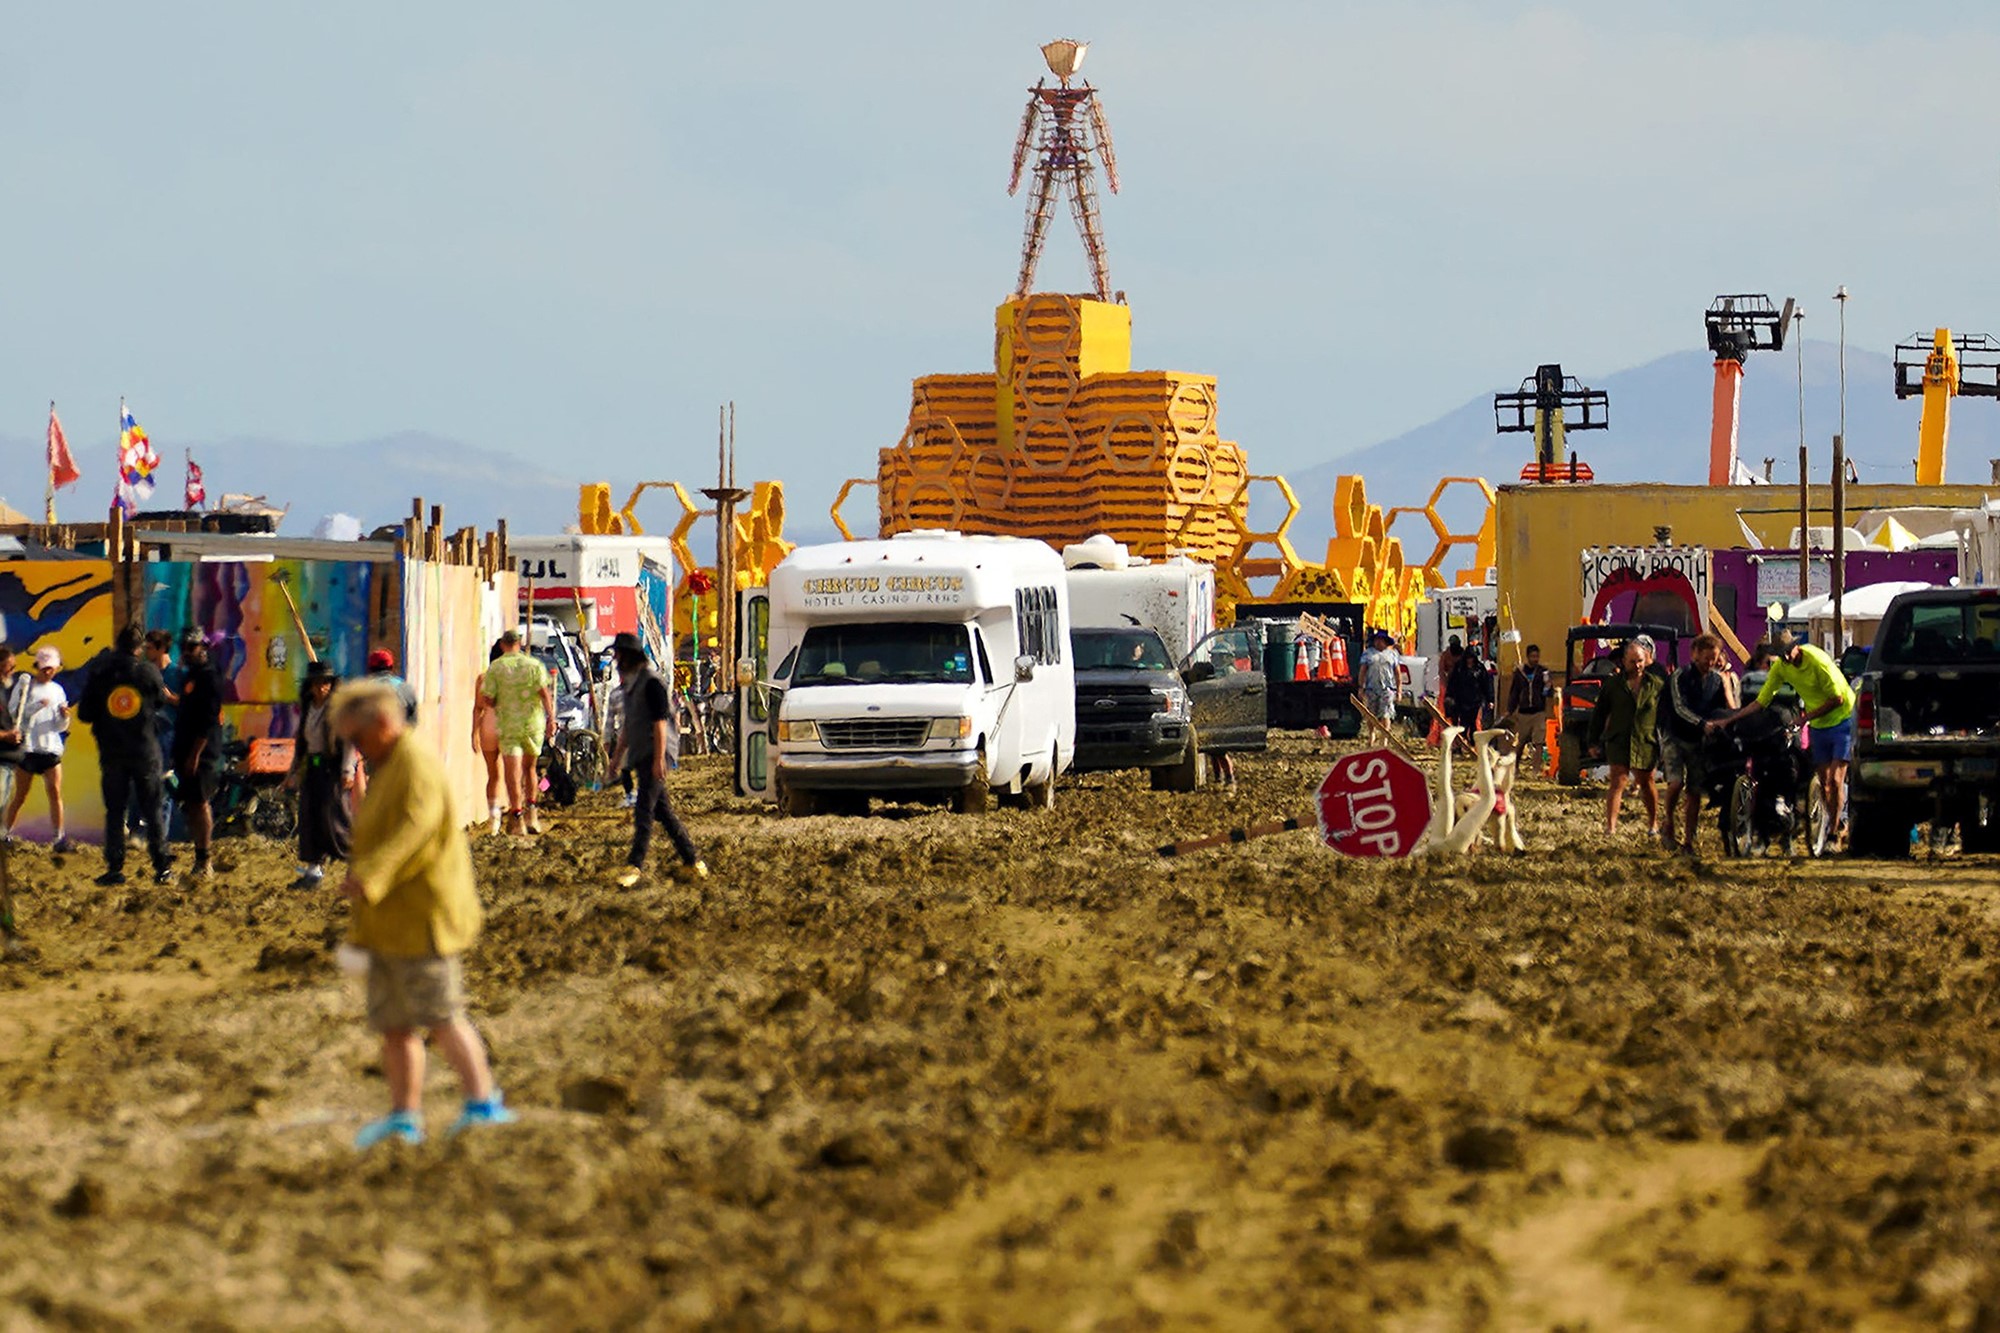 People walk through the mud at Burning Man.